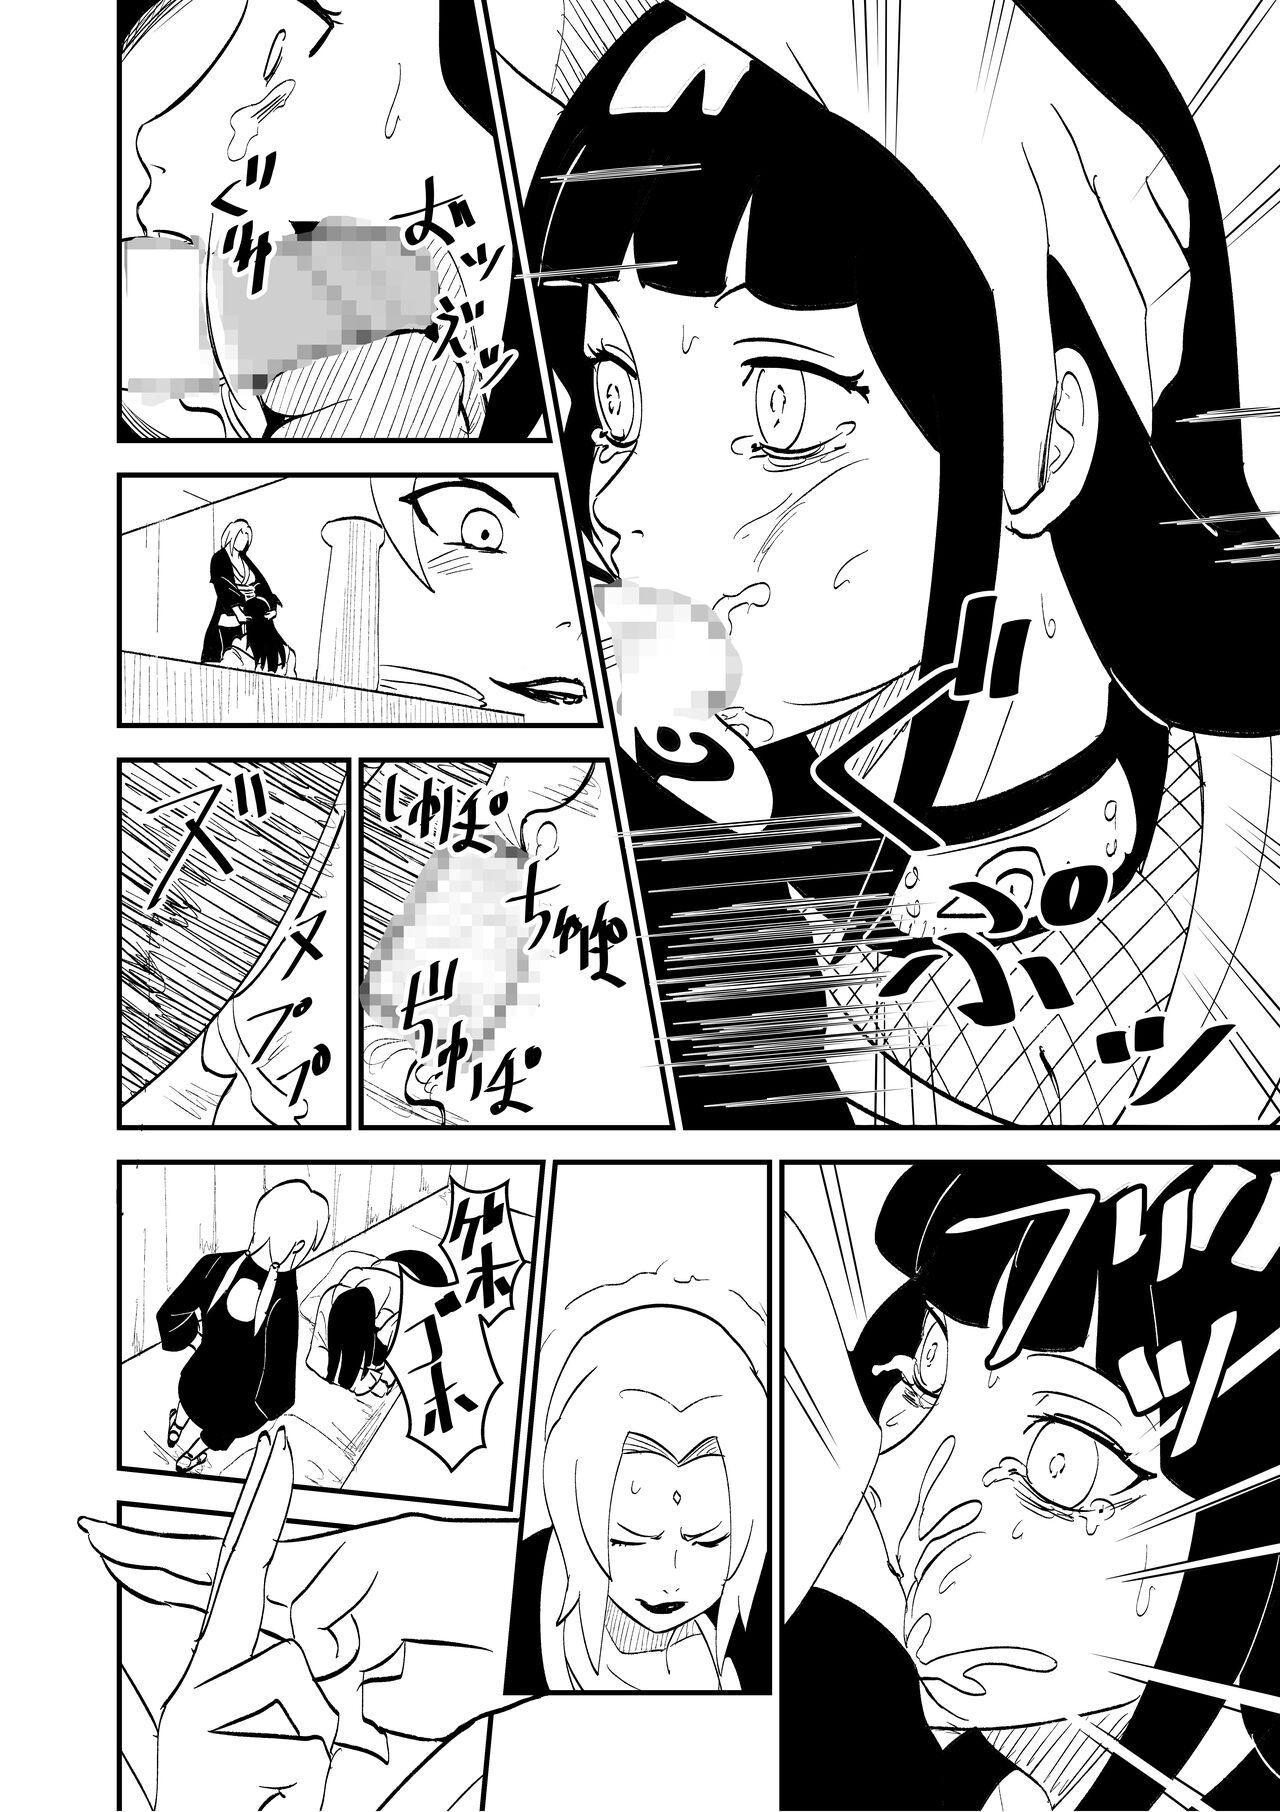 Curvy Mugen Tsukiyomi Series Onagokai 1 Tsunade Hyuuga Hinata - Naruto Movie - Page 2